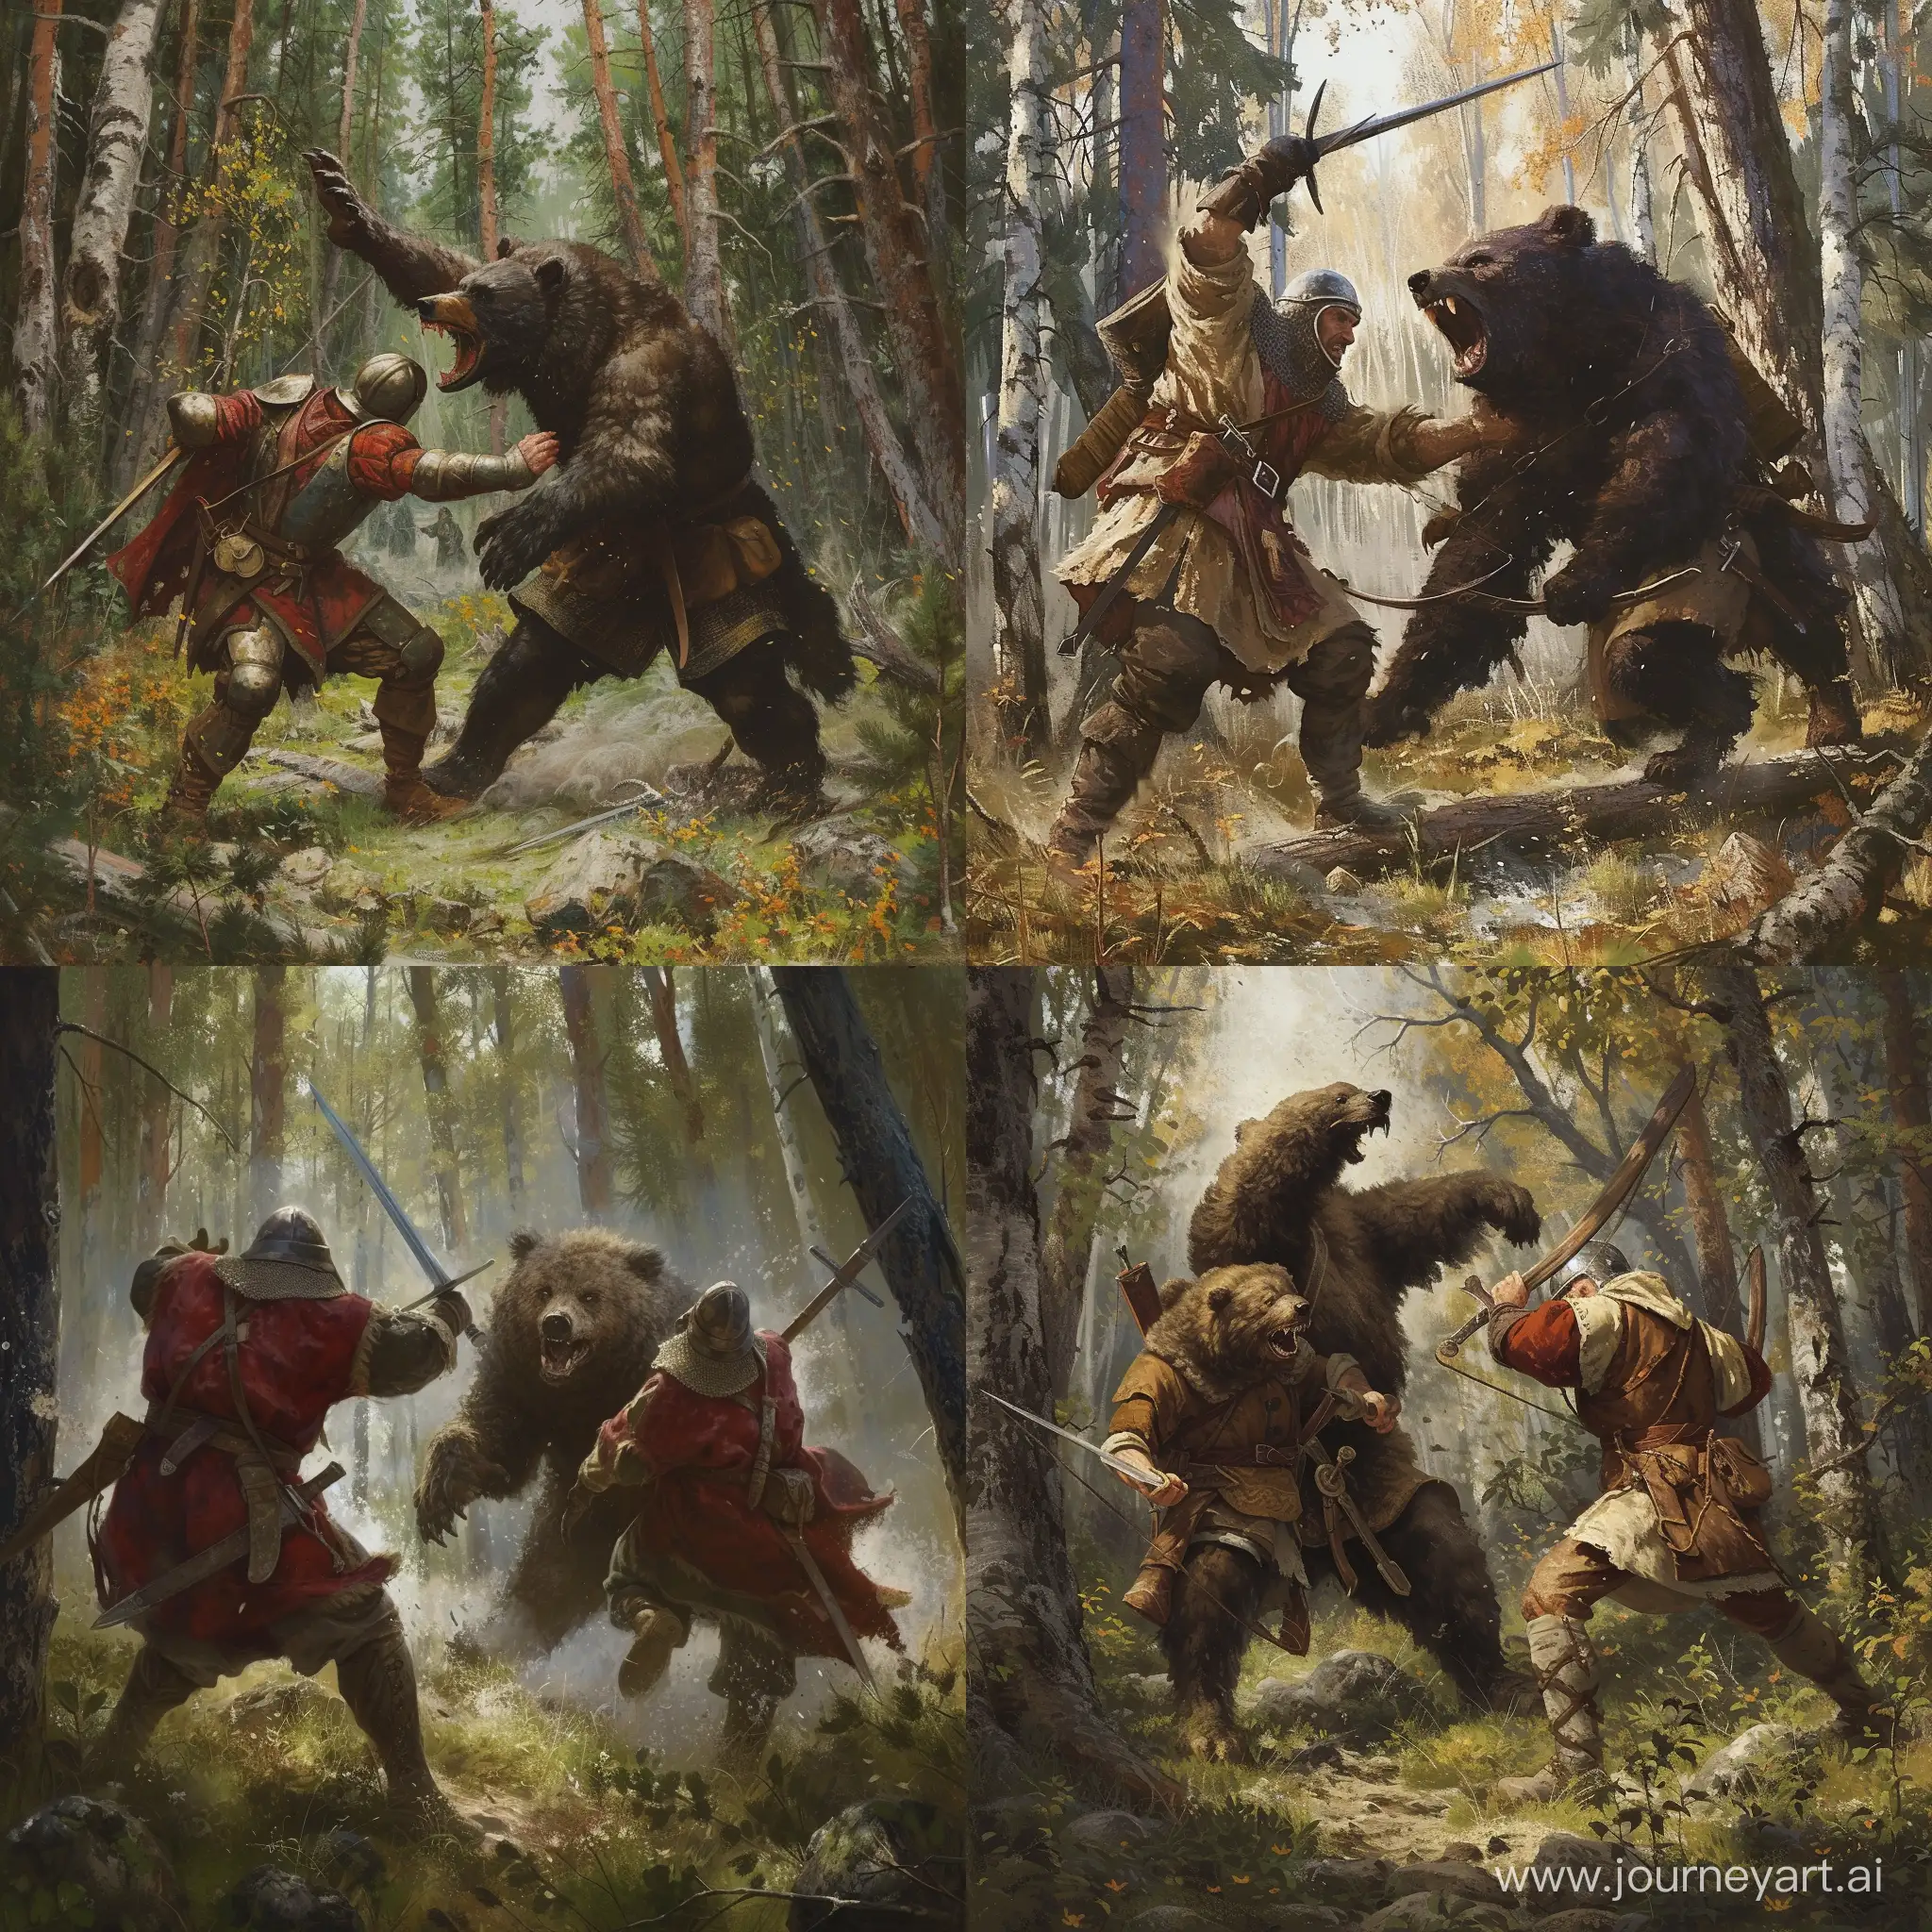 Два средневековых русских охотника бьются в лесу с медведем-оборотнем.